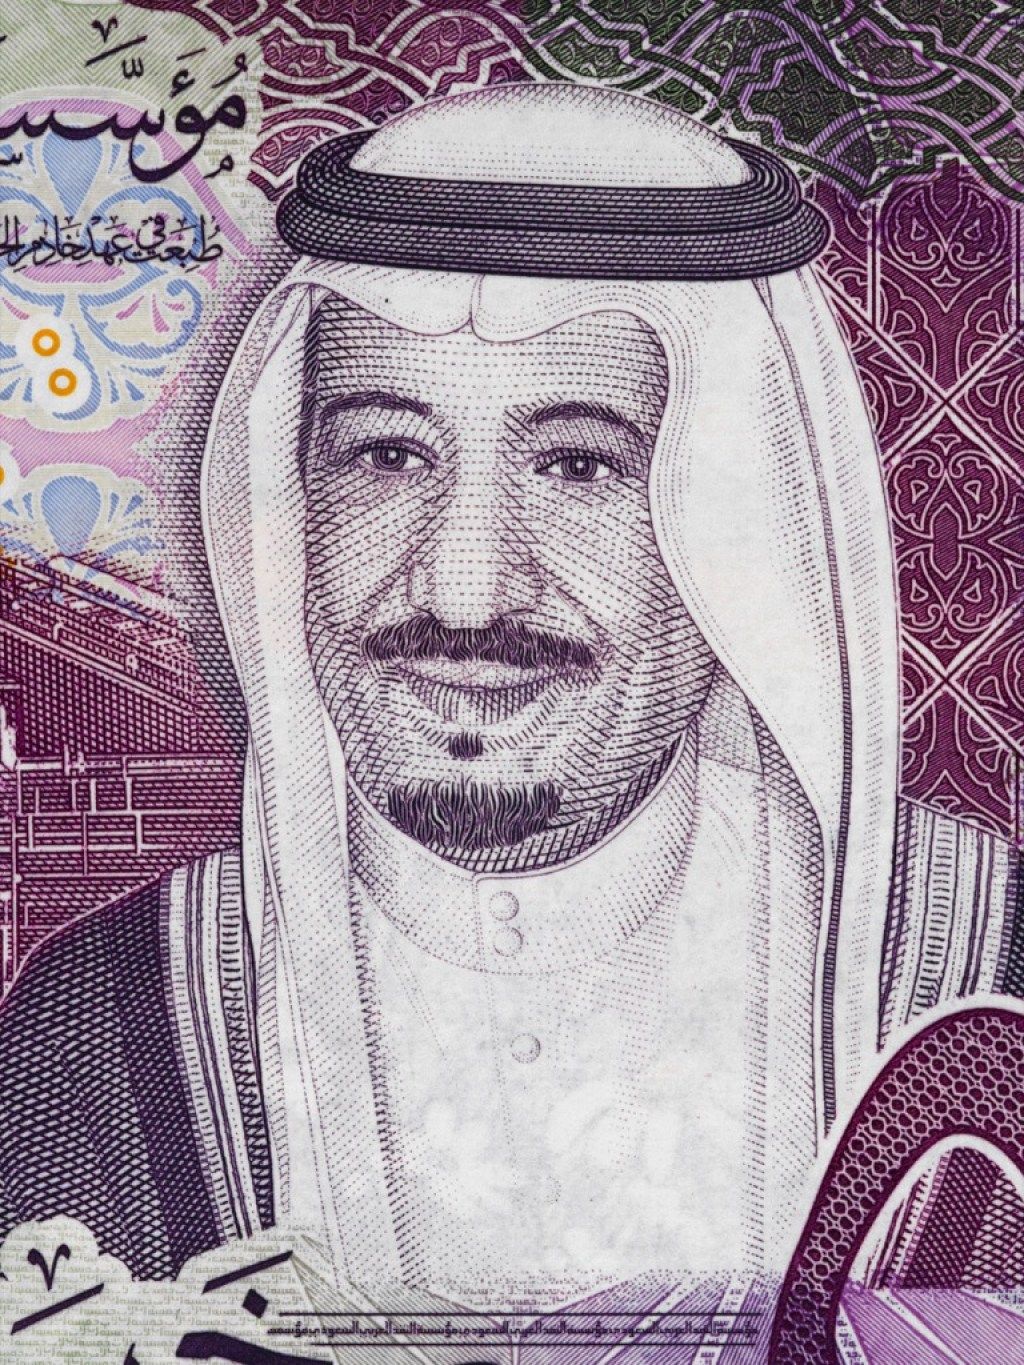 König Salman bin Abdulaziz Al Saud